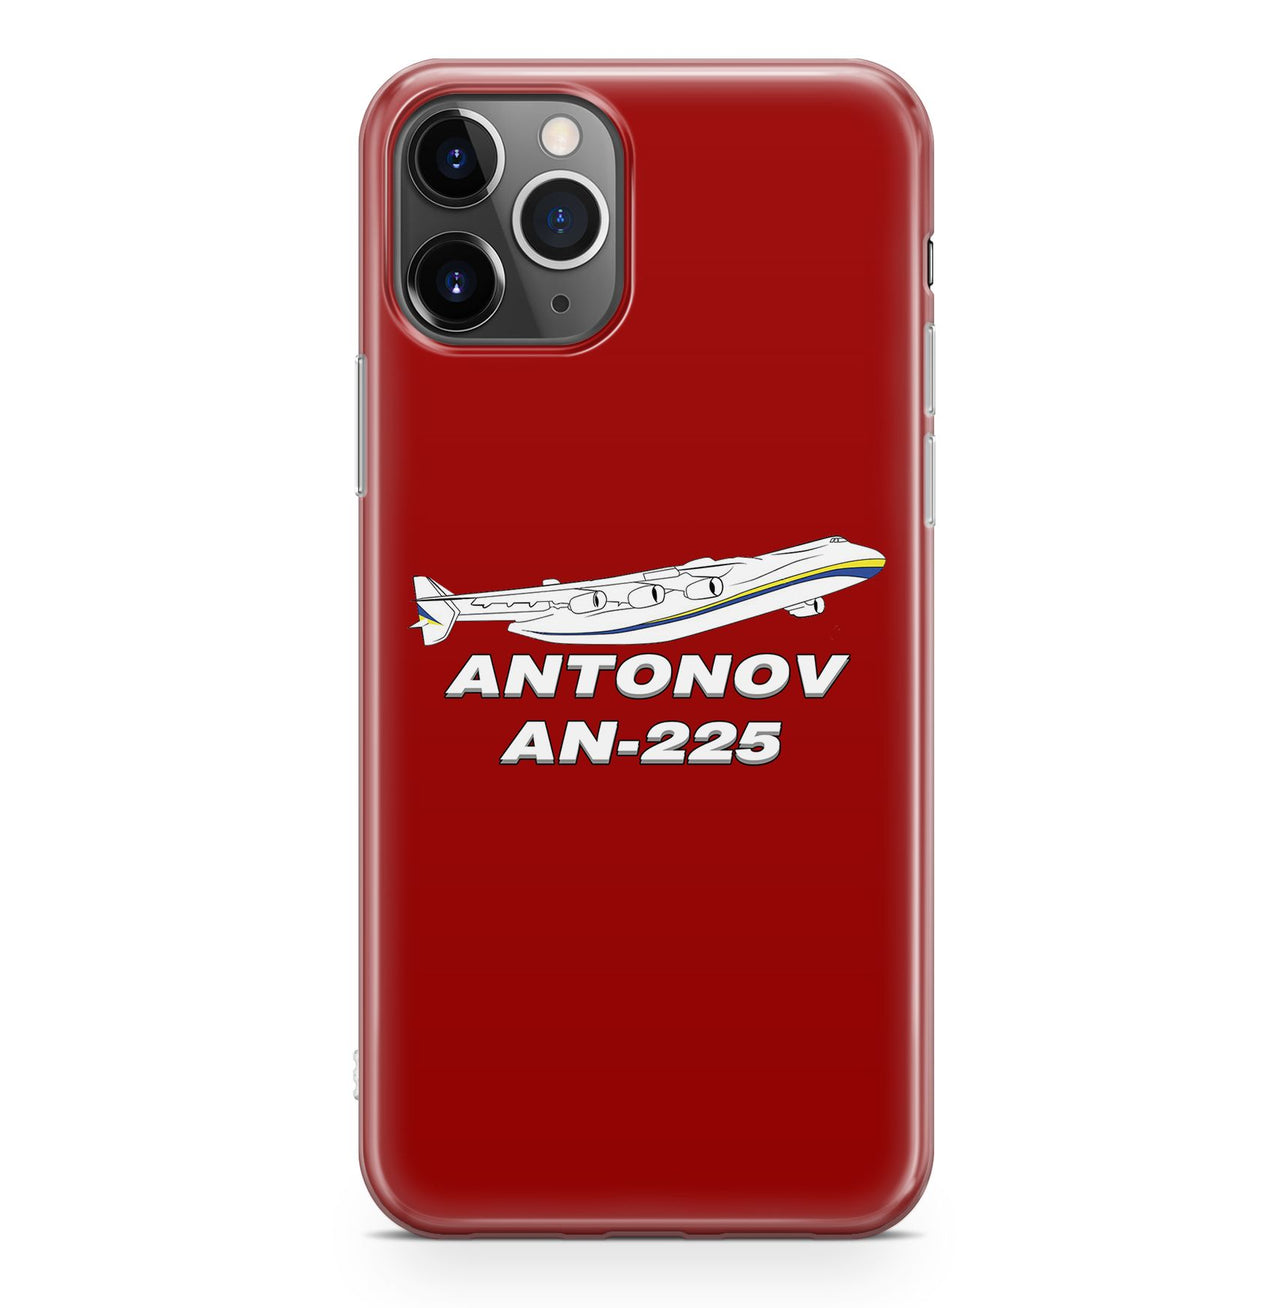 Antonov AN-225 (27) Designed iPhone Cases